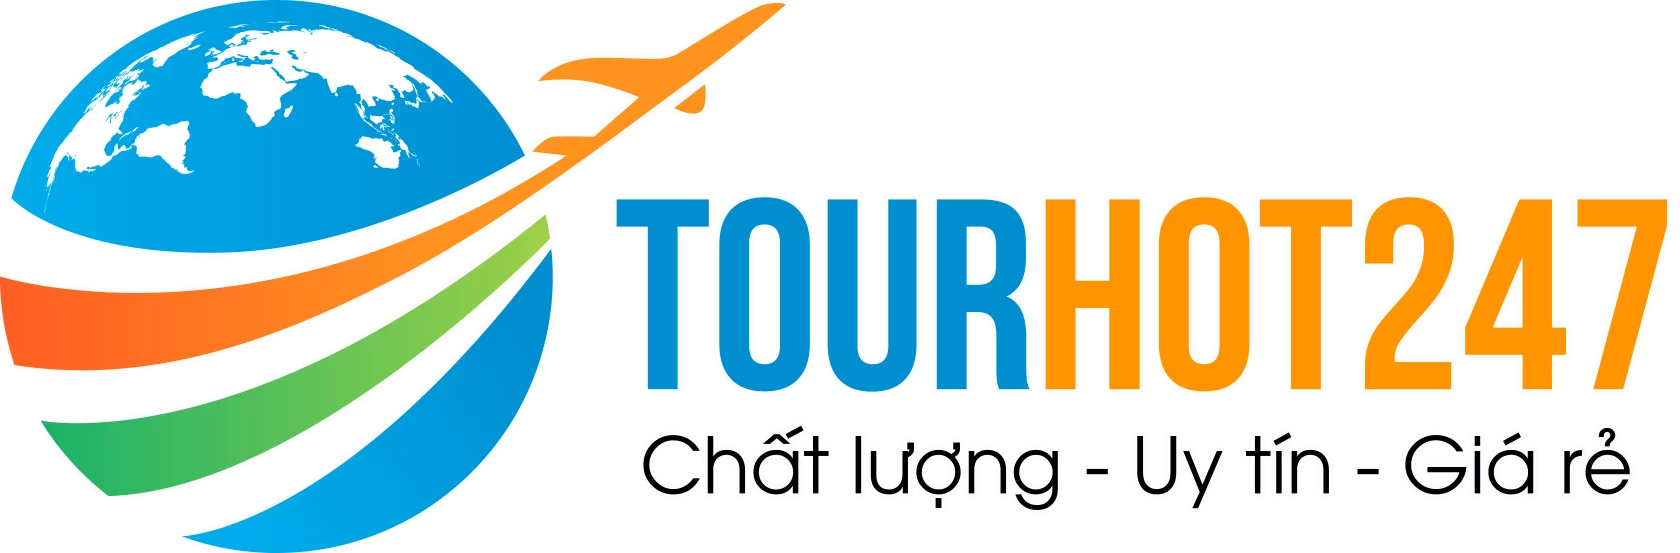 Tourhot247.com – Chuyên tour chất lương – Uy tín – Giá rẻ